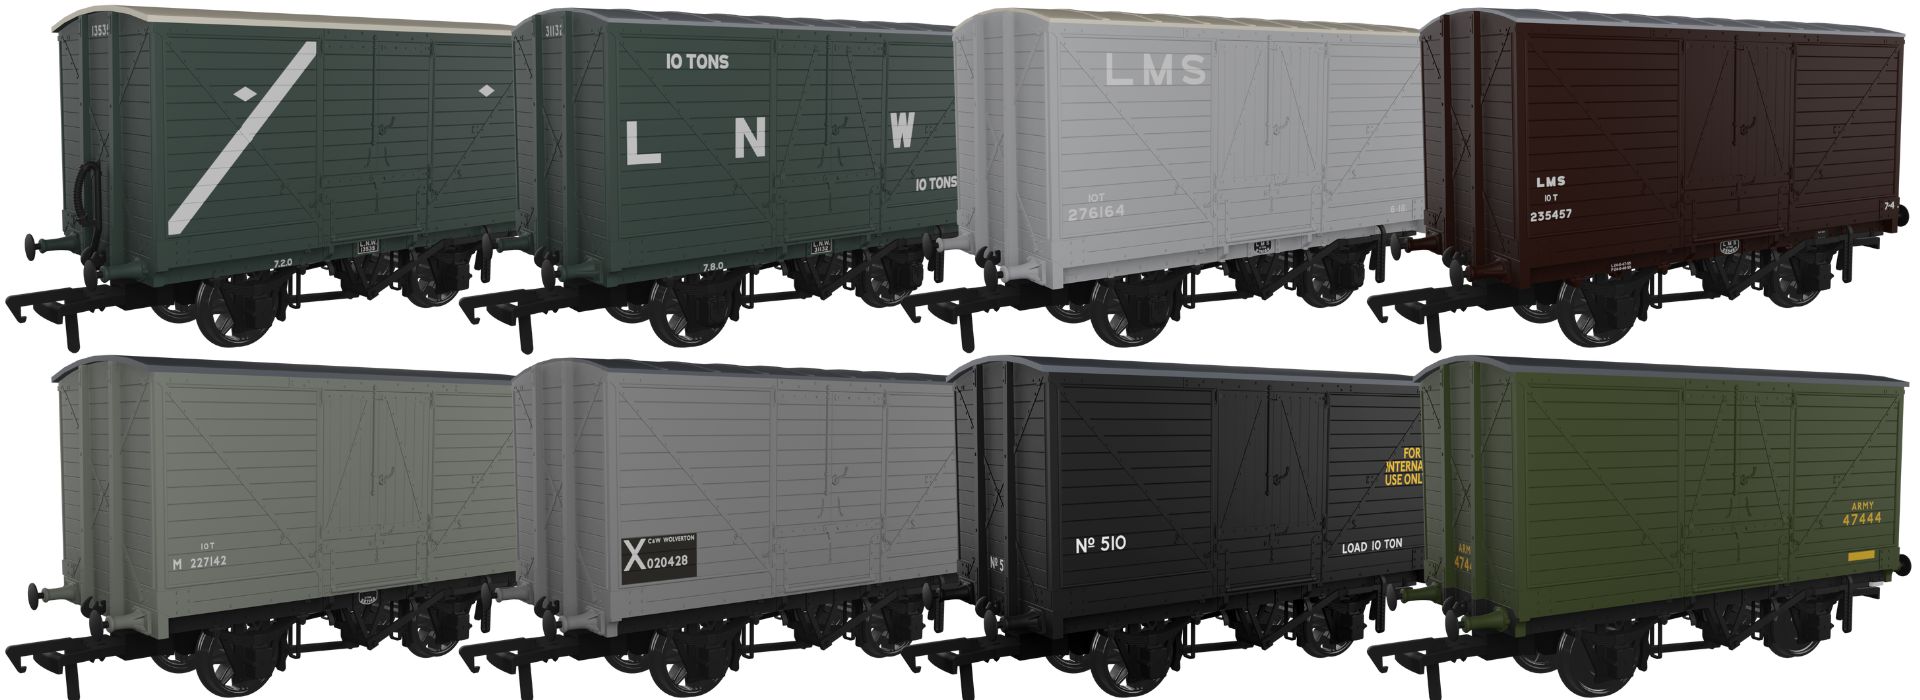 Rapido Trains UK OO Gauge (1:76 Scale) 10 ton covered van LNWR